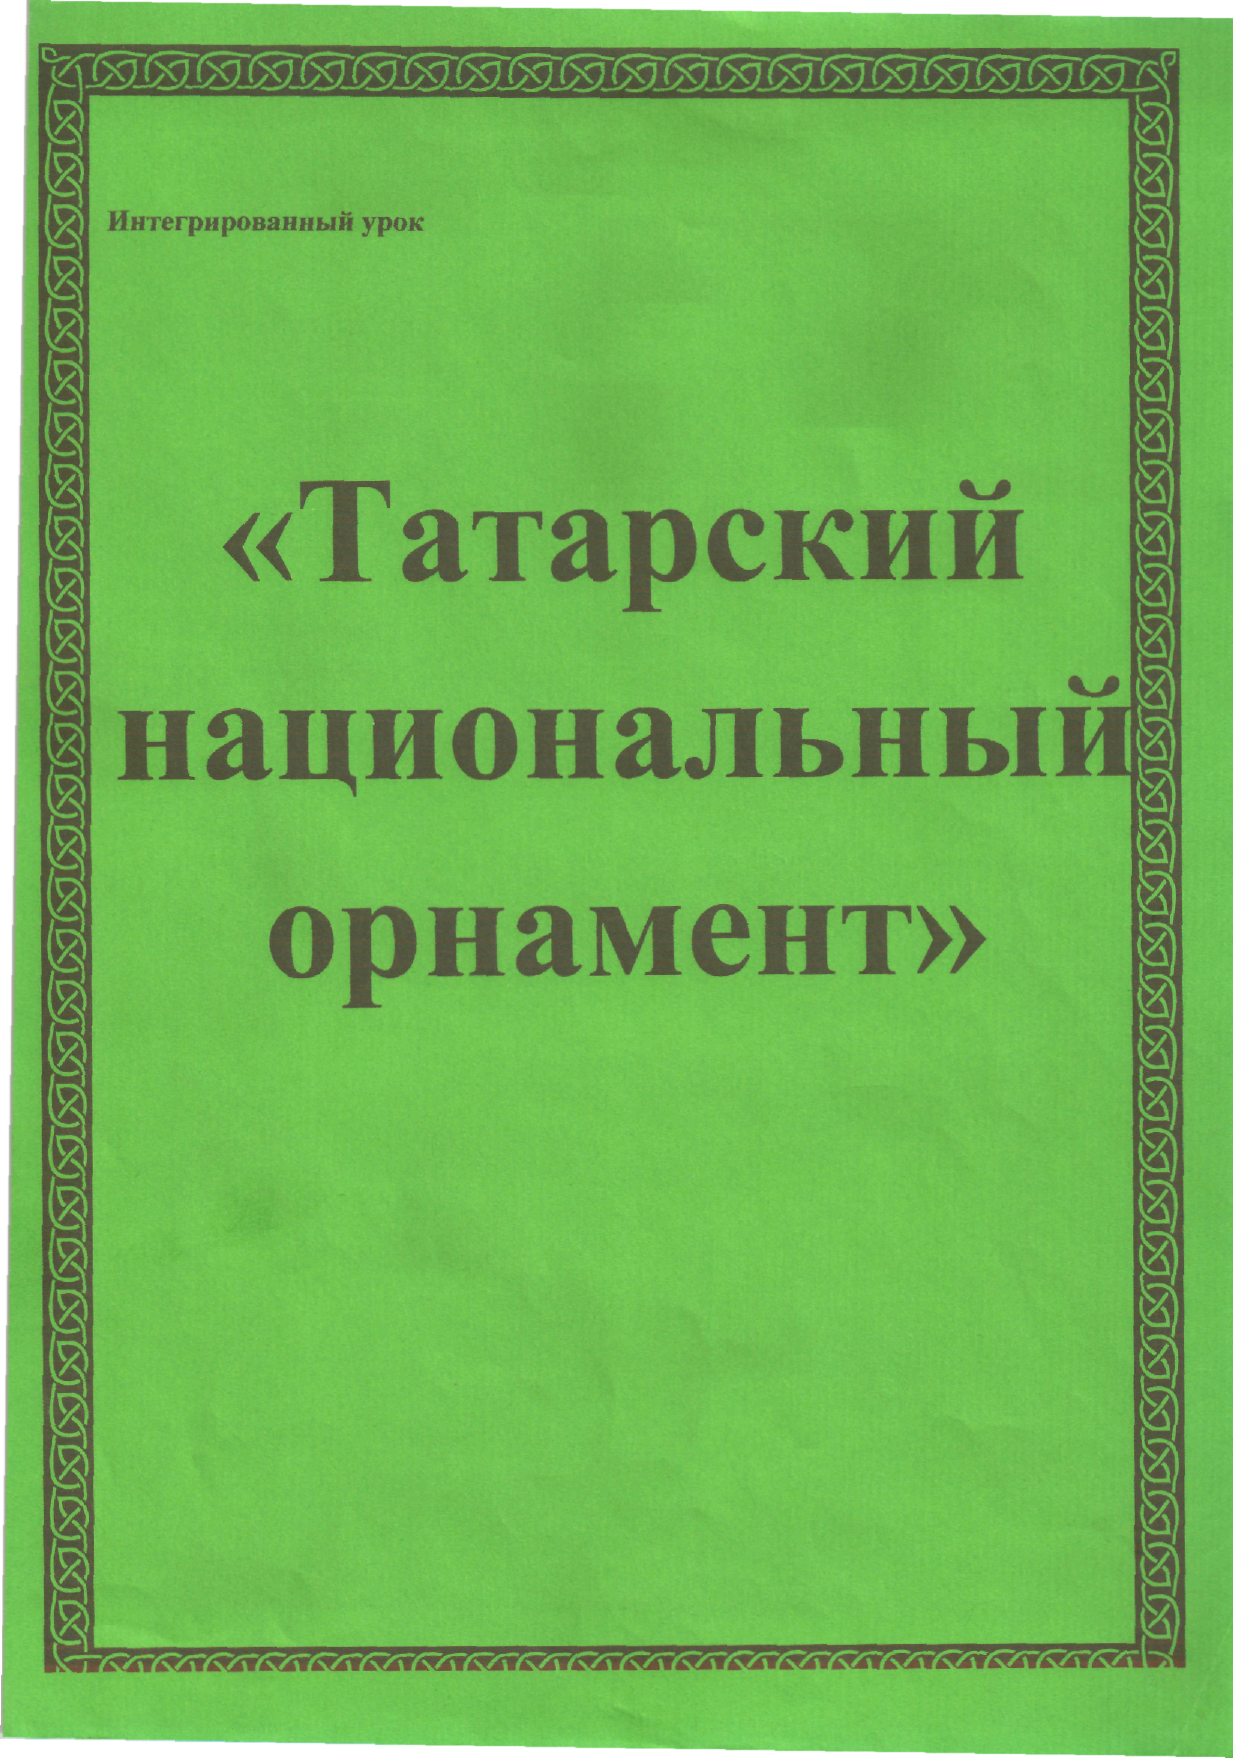 Интегрированный урок по татарскому языку Татарский национальный орнамент